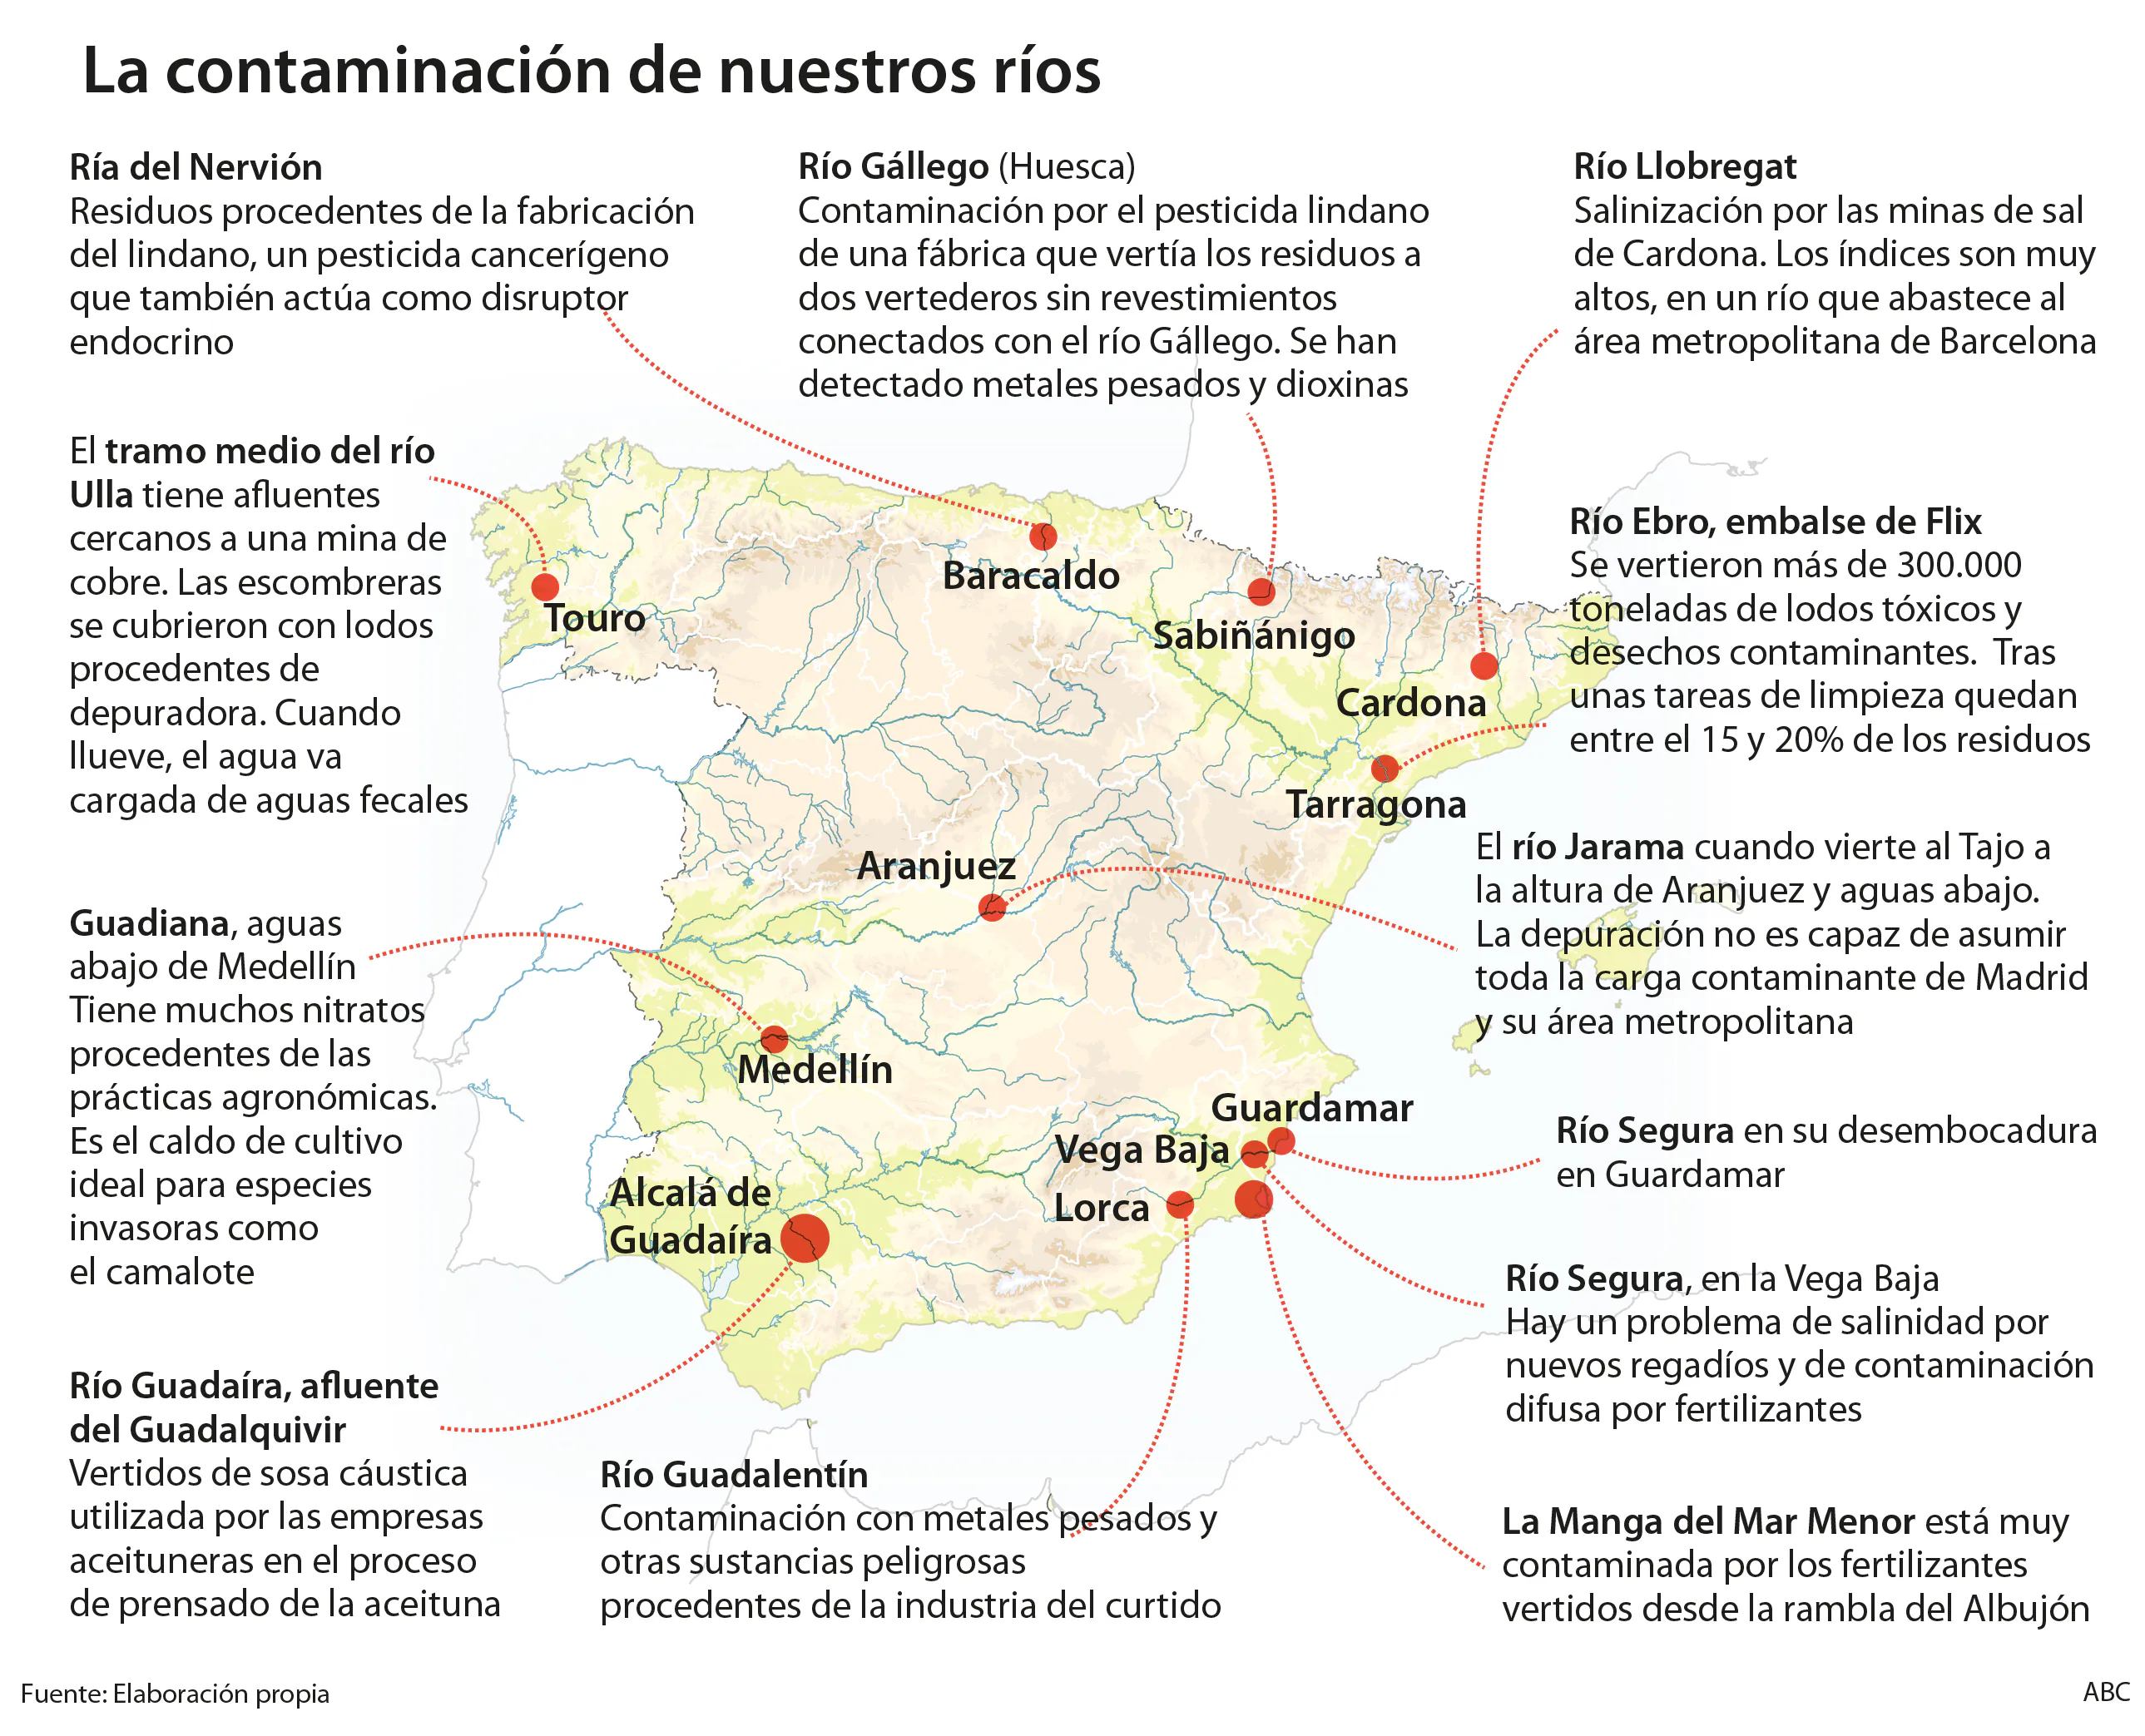 La contaminación silenciosa: cuatro de cada diez ríos en España suspenden en calidad de sus aguas